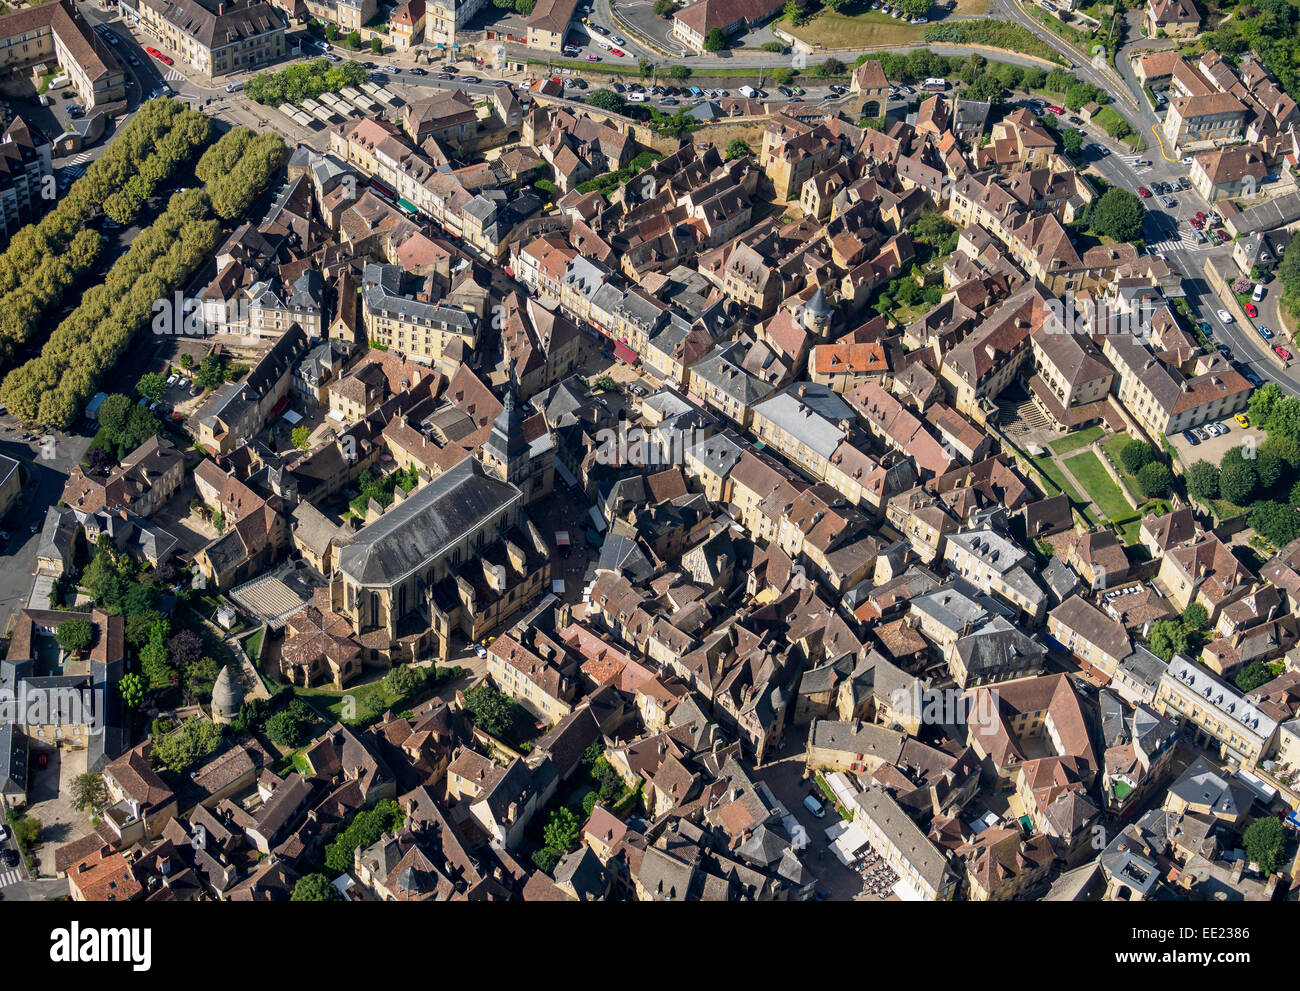 Vista aerea: la vecchia città medievale di Sarlat nella regione Périgord della Francia meridionale. Foto Stock